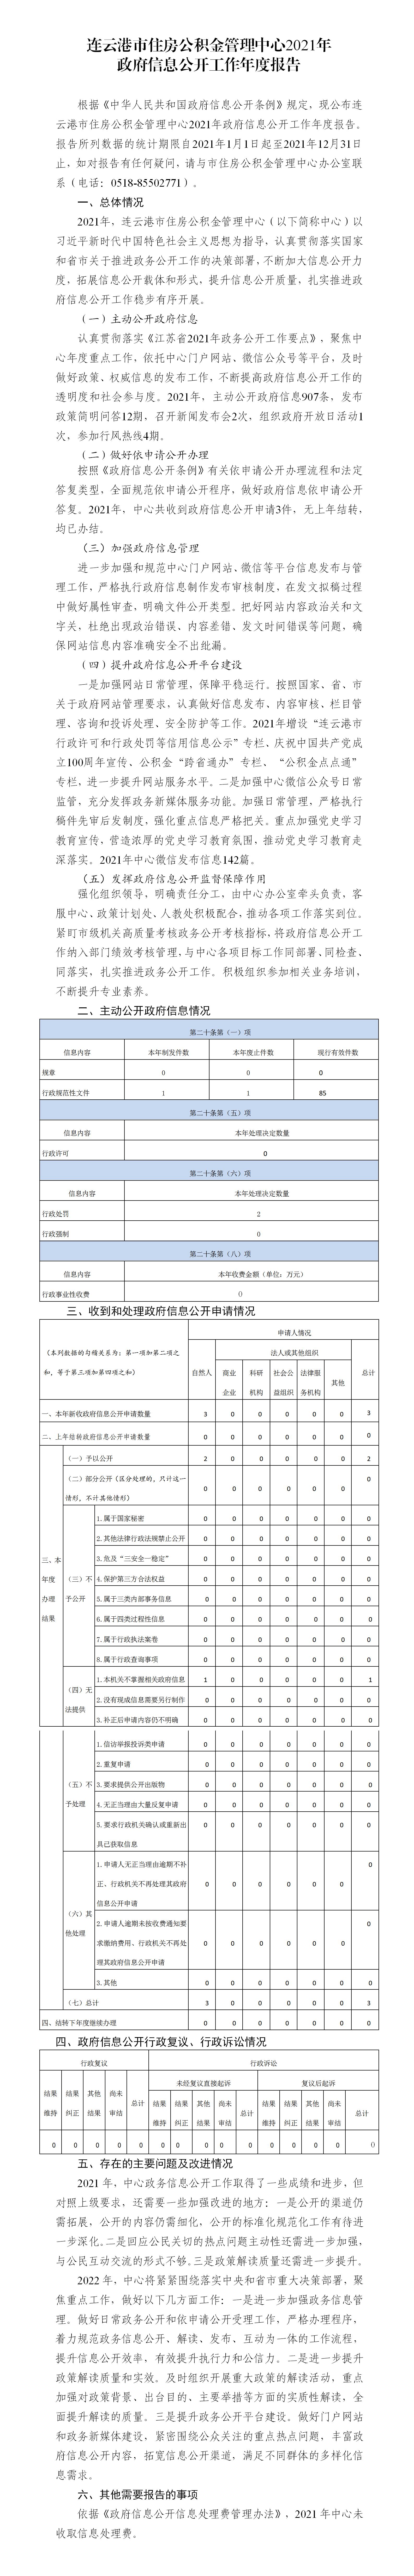 连云港市住房公积金管理中心2021年传奇娱乐手机版
工作年度报告（市公积金中心）_01.jpg